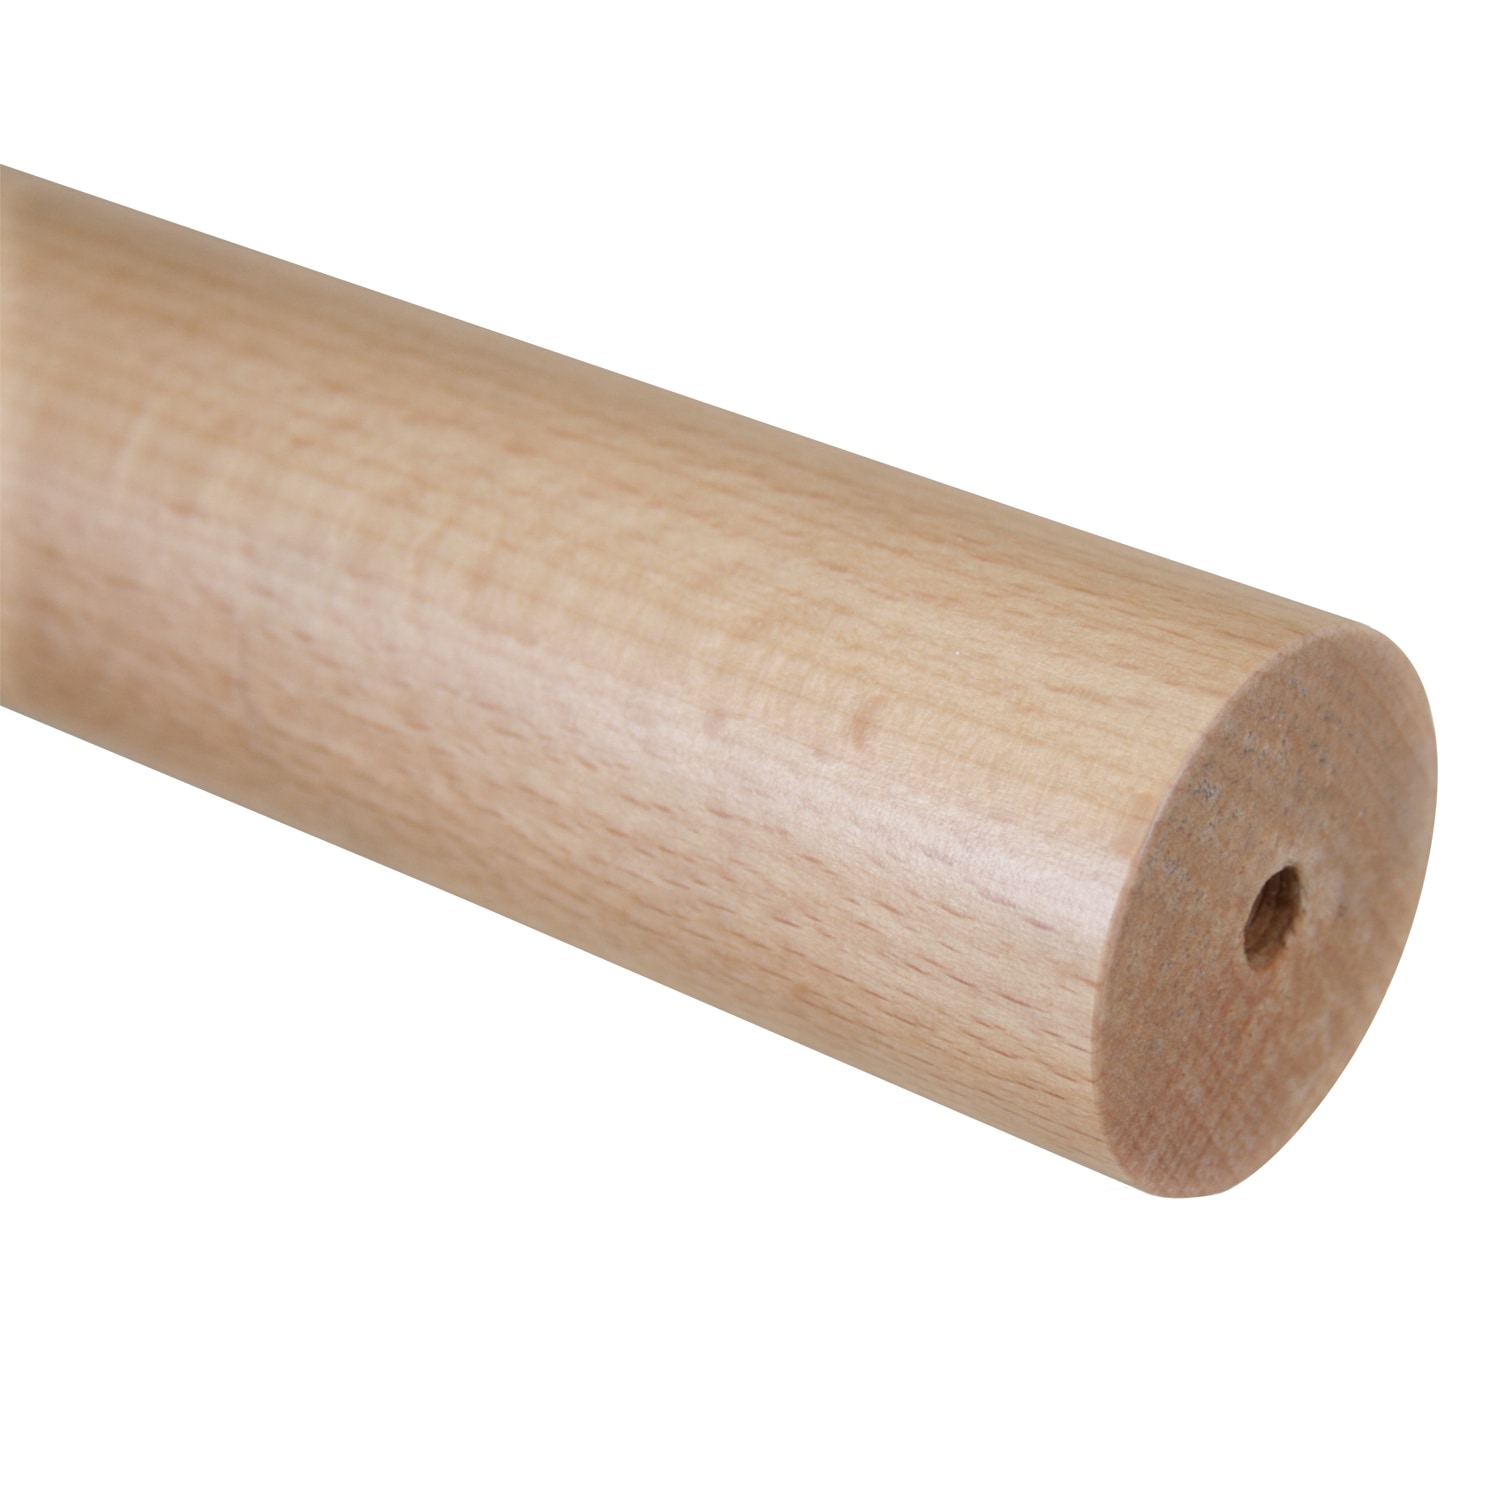 Handlauf Holz Buche 1000 mm mit Bohrungen